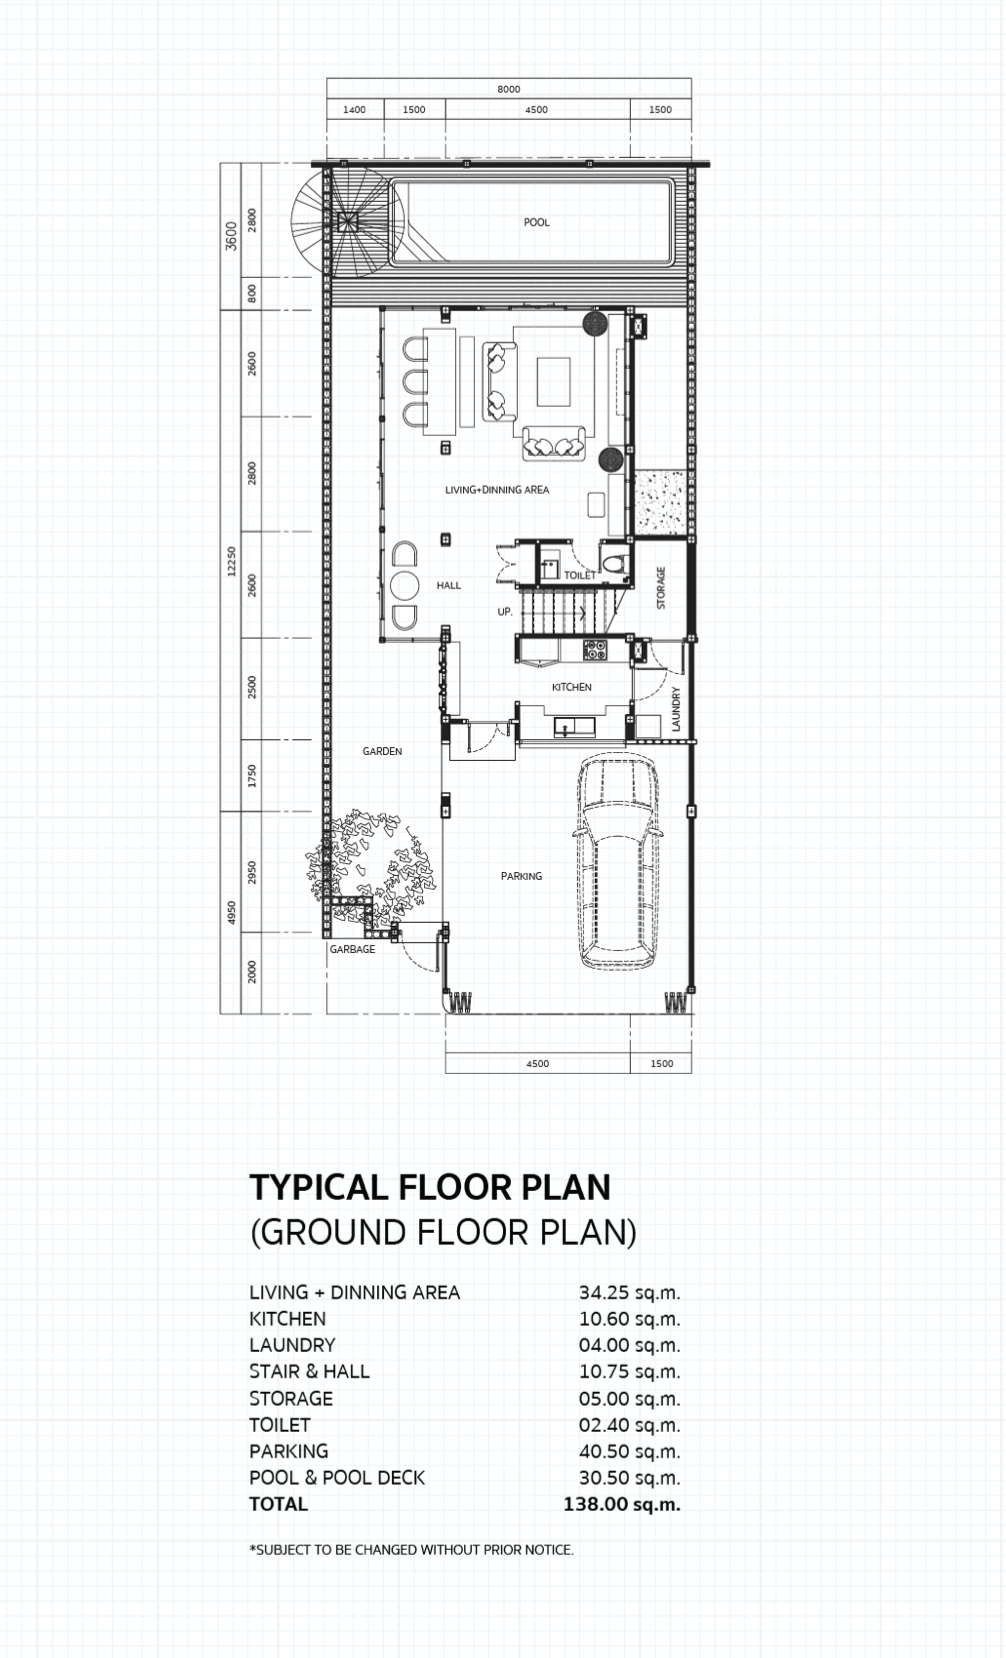 Typical floor plan